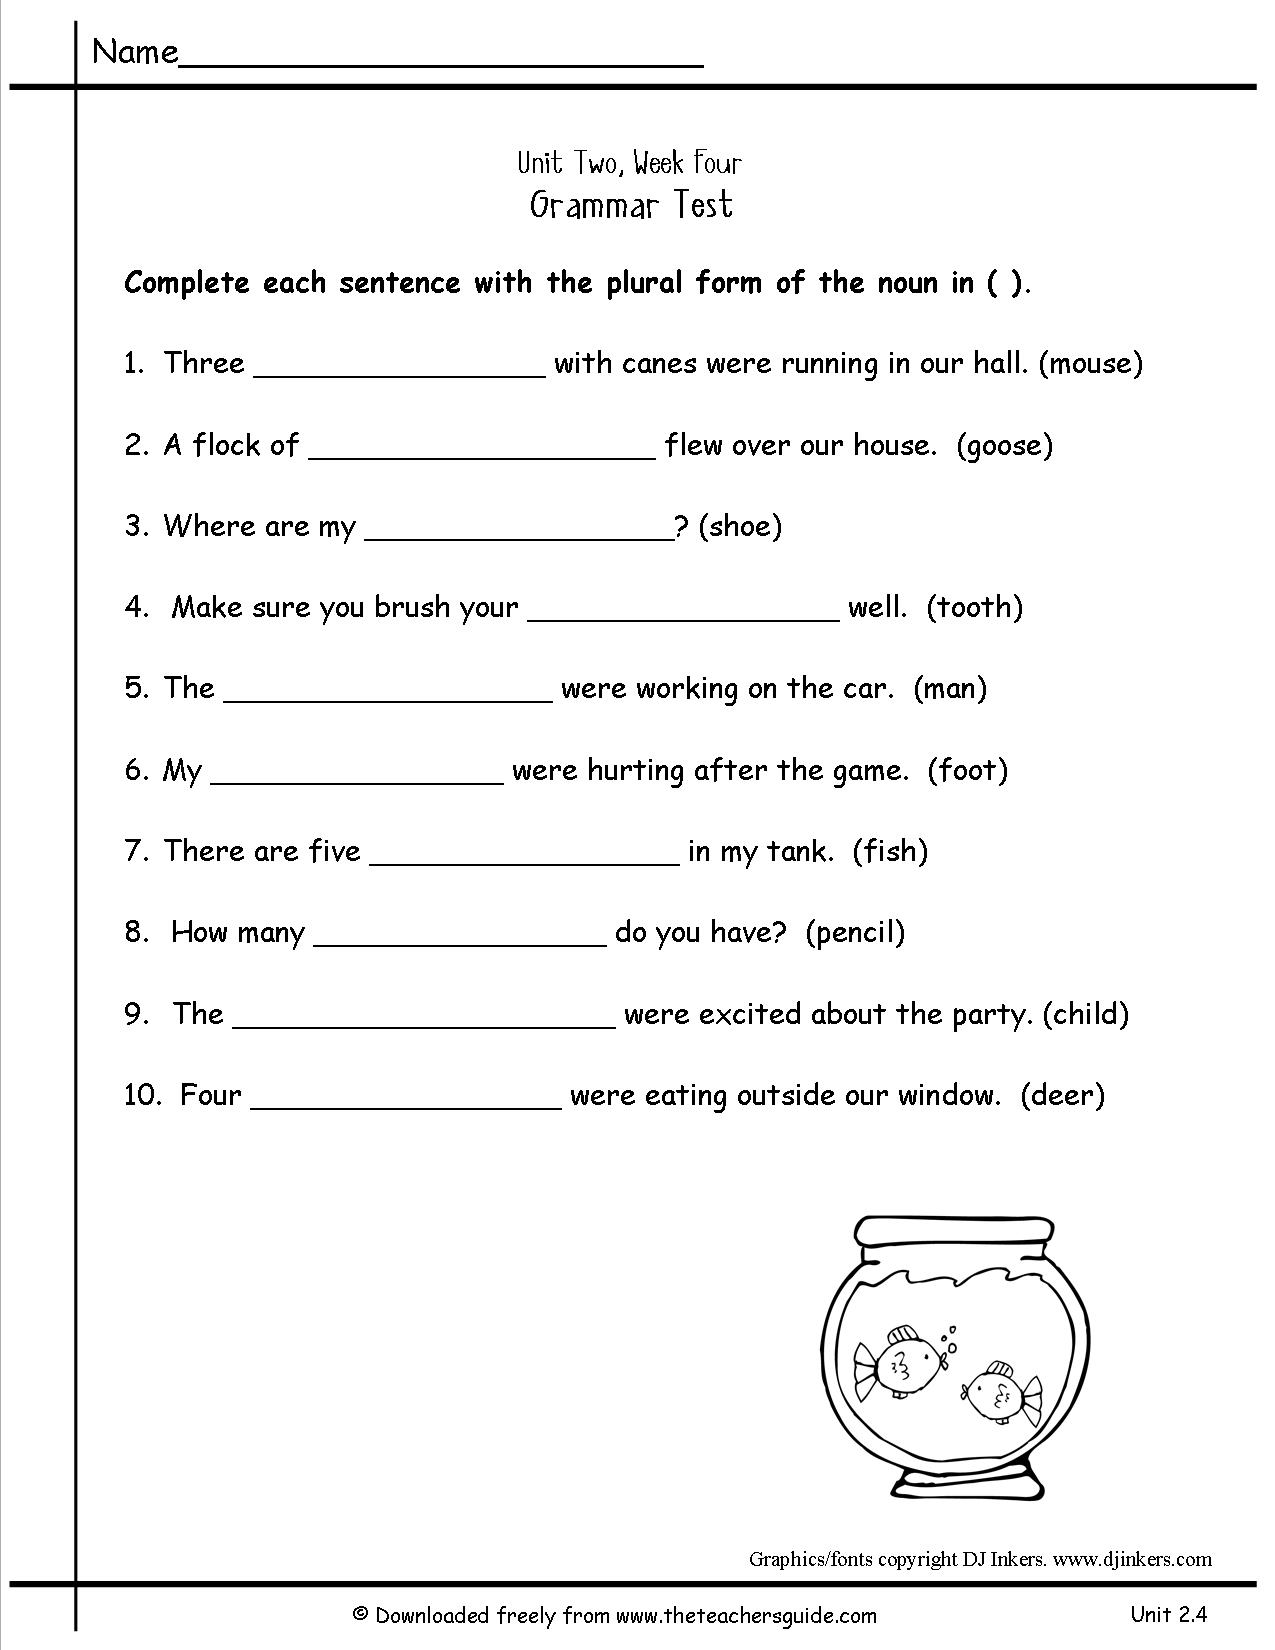 18 Best Images Of Irregular Plurals Worksheets 1st Grade Irregular Plural Nouns Worksheet 2nd